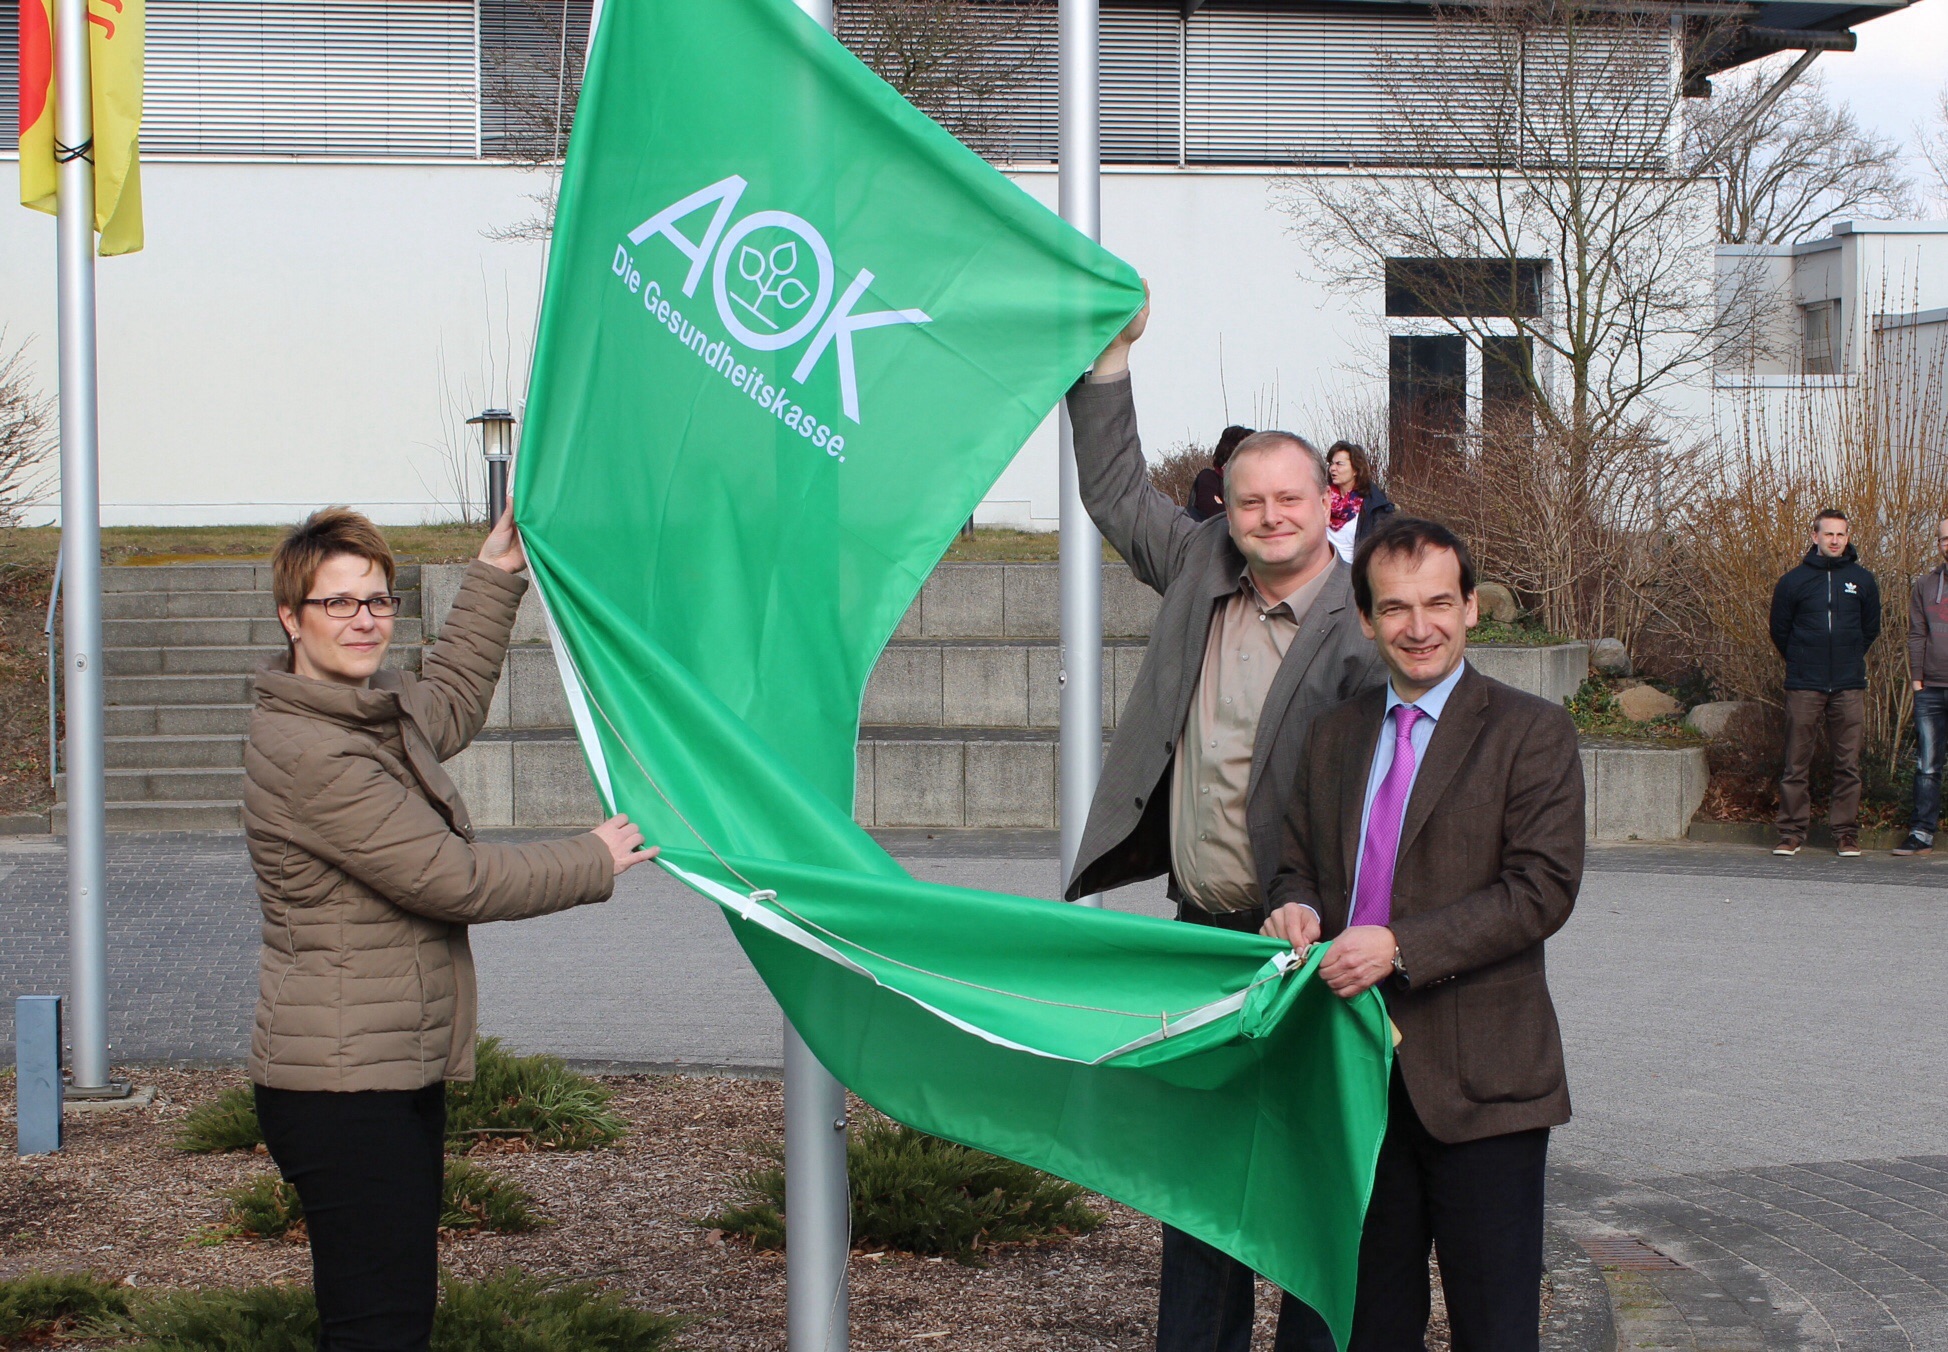 Sportschulleiterin Stefanie Lück, Henry Saage (Landesrepräsentant der AOK Sachsen-Anhalt) und LSB-Präsident Andreas Silbersack beim Hissen der AOK-Fahne in Osterburg.